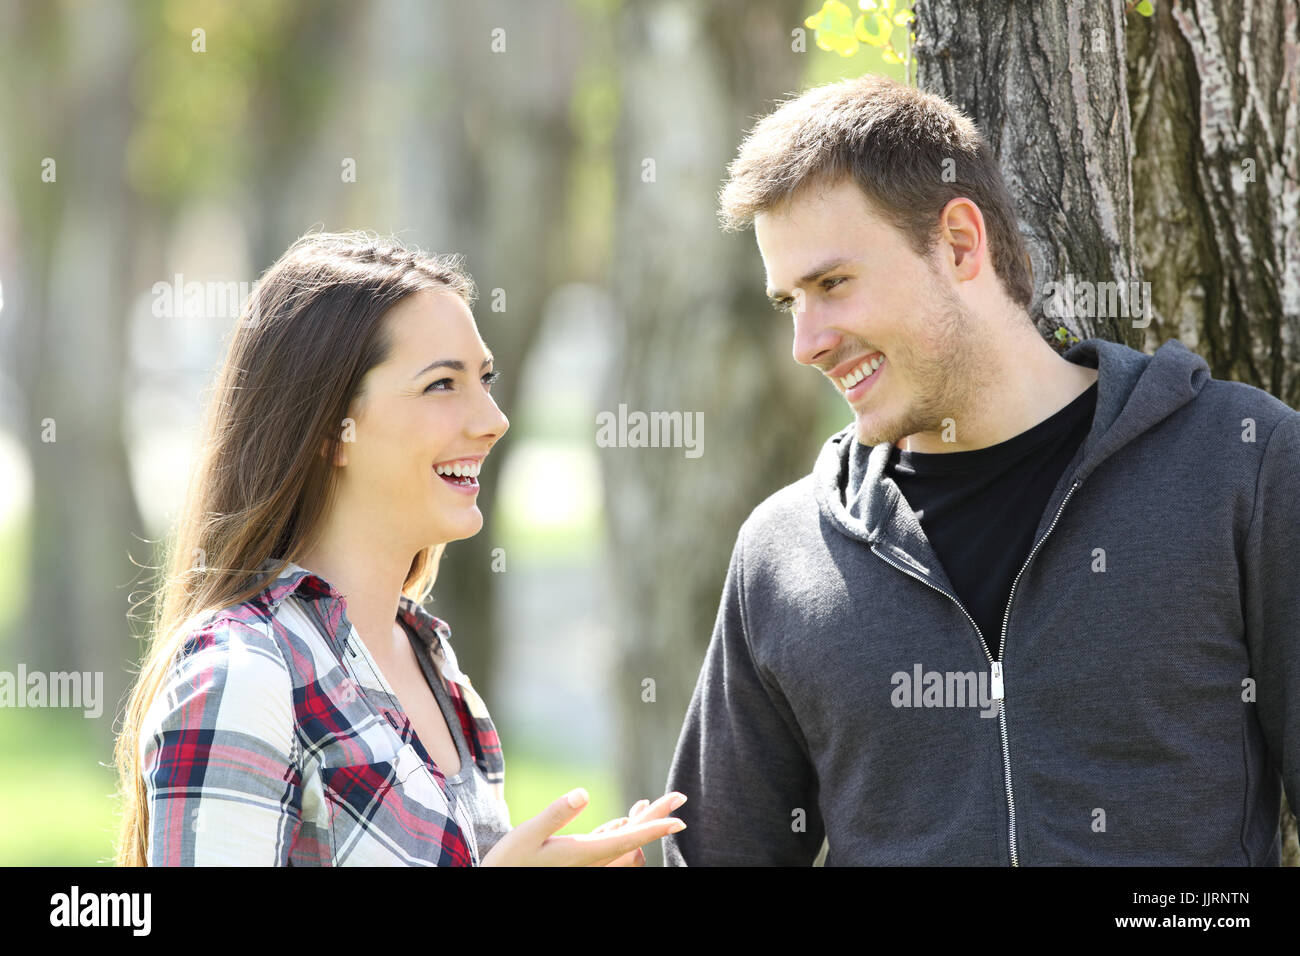 Deux amis parler des ados heureux et à l'autre dans un parc Banque D'Images